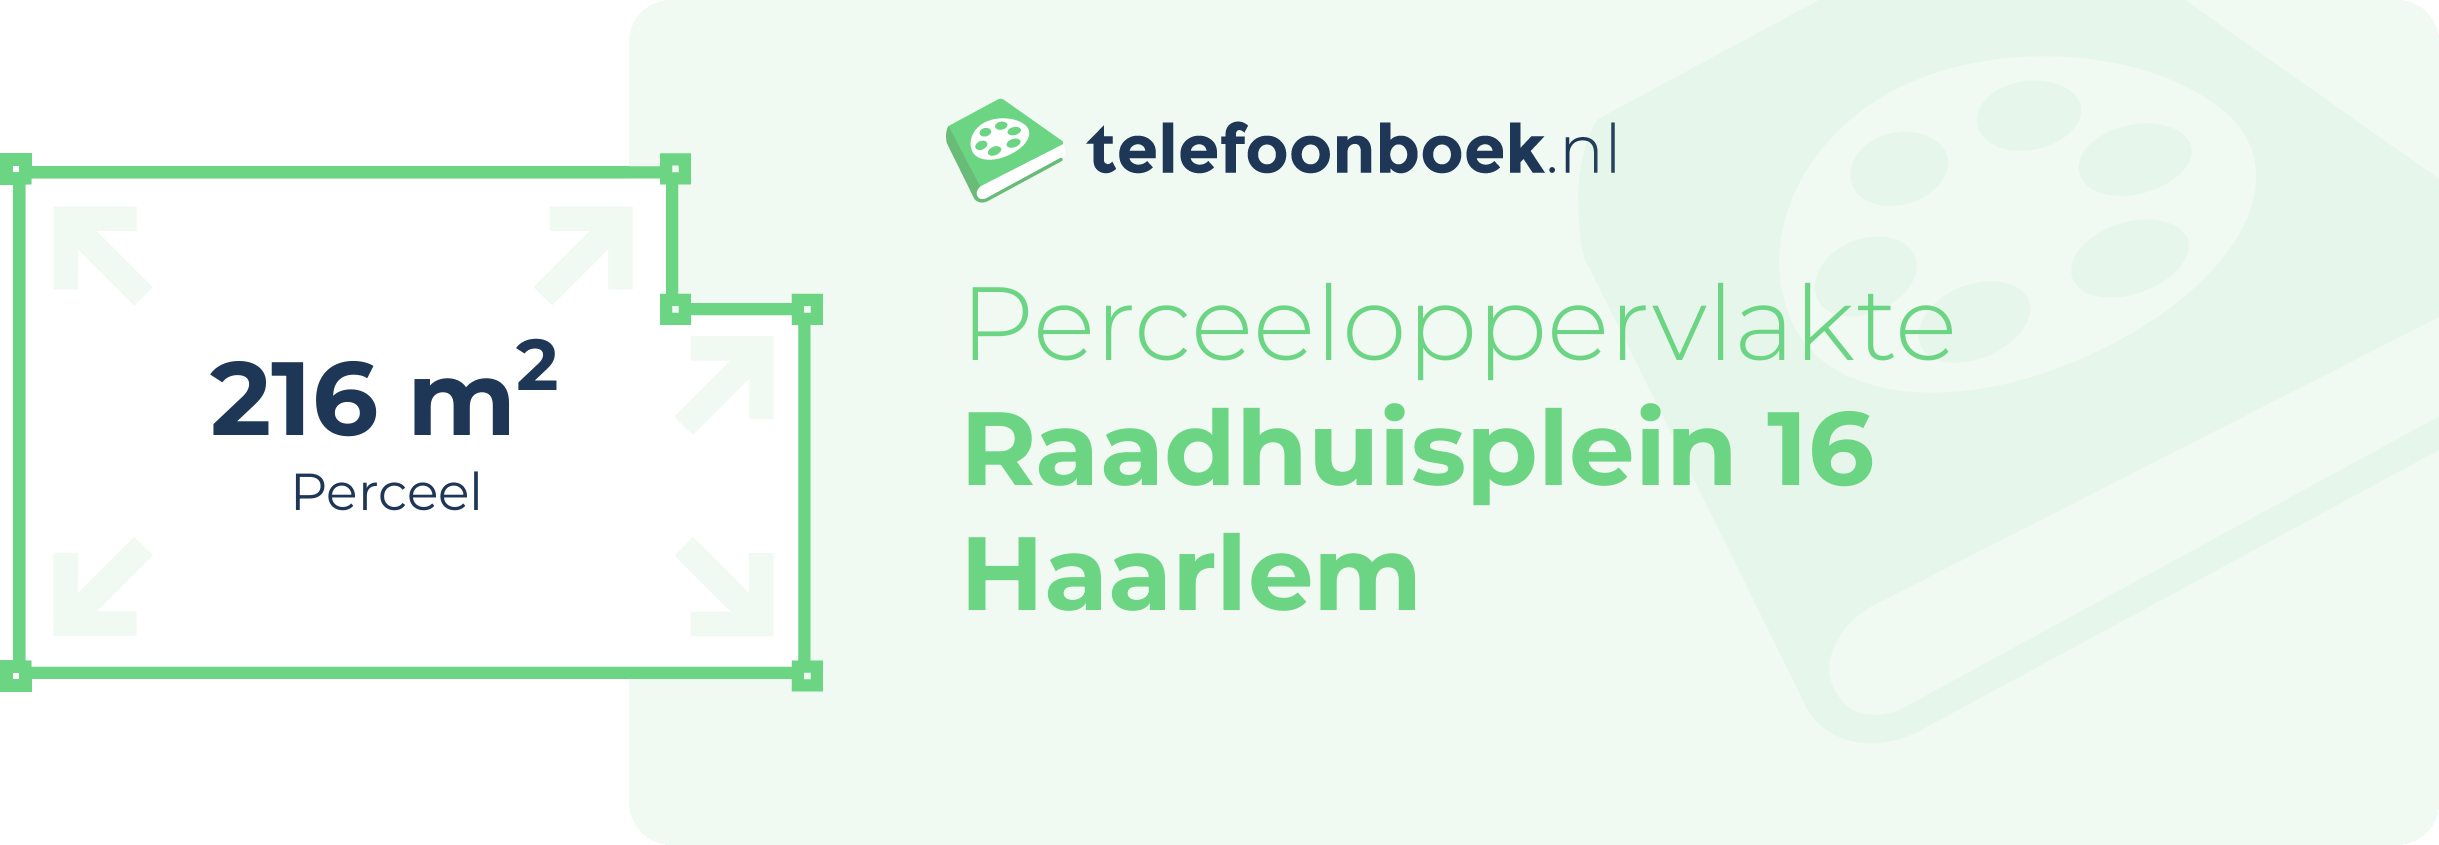 Perceeloppervlakte Raadhuisplein 16 Haarlem